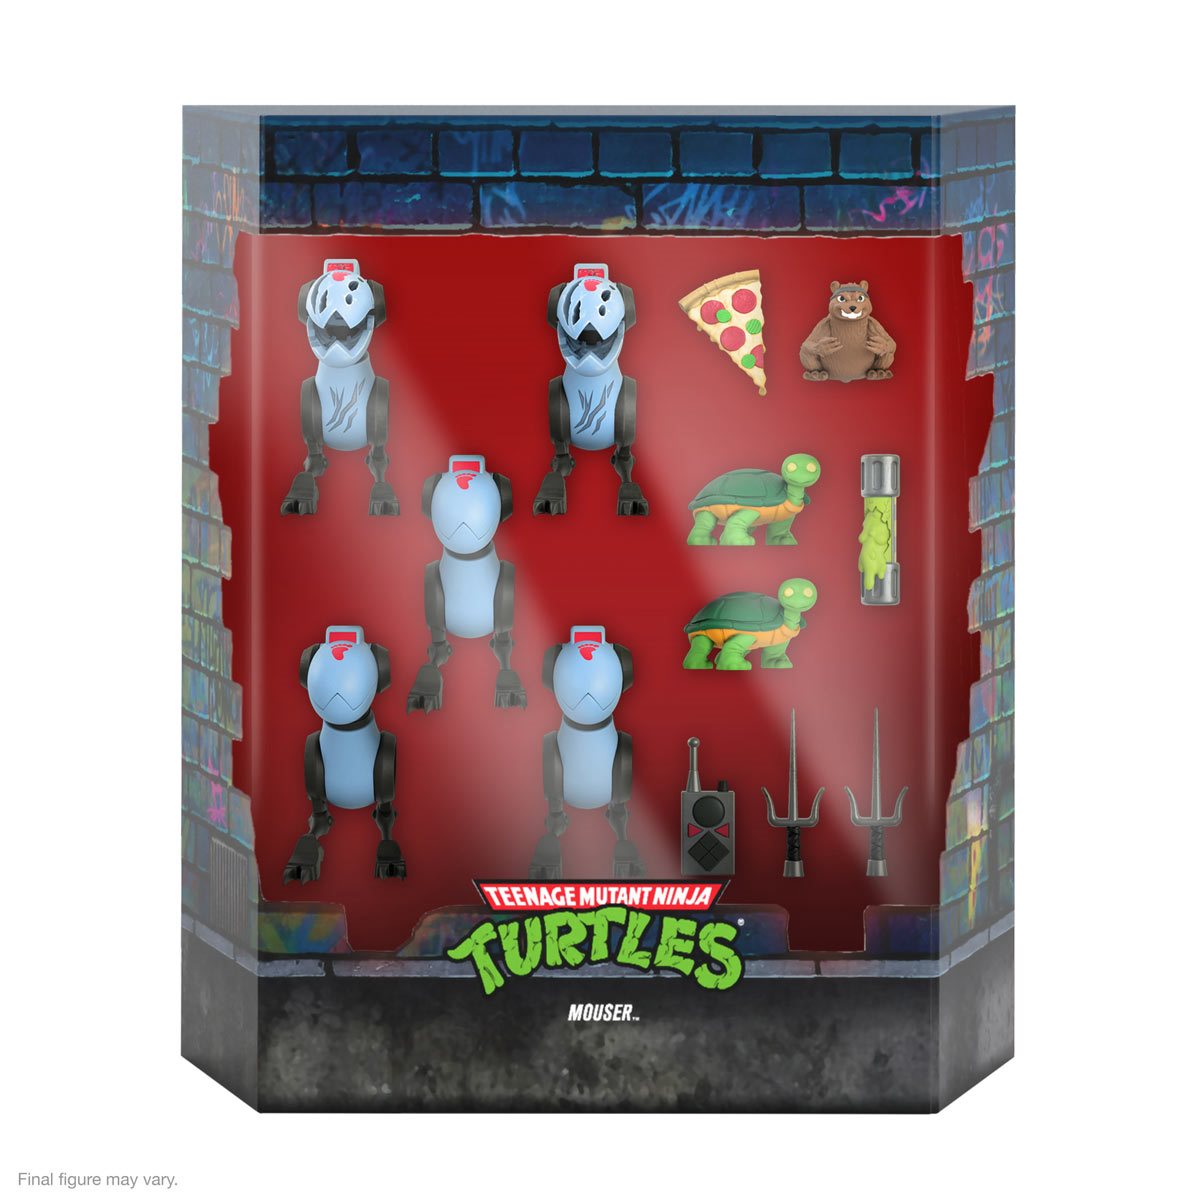 Mouser (5 pack) - Teenage Mutant Ninja Turtles Super 7 Ultimates Action Figure